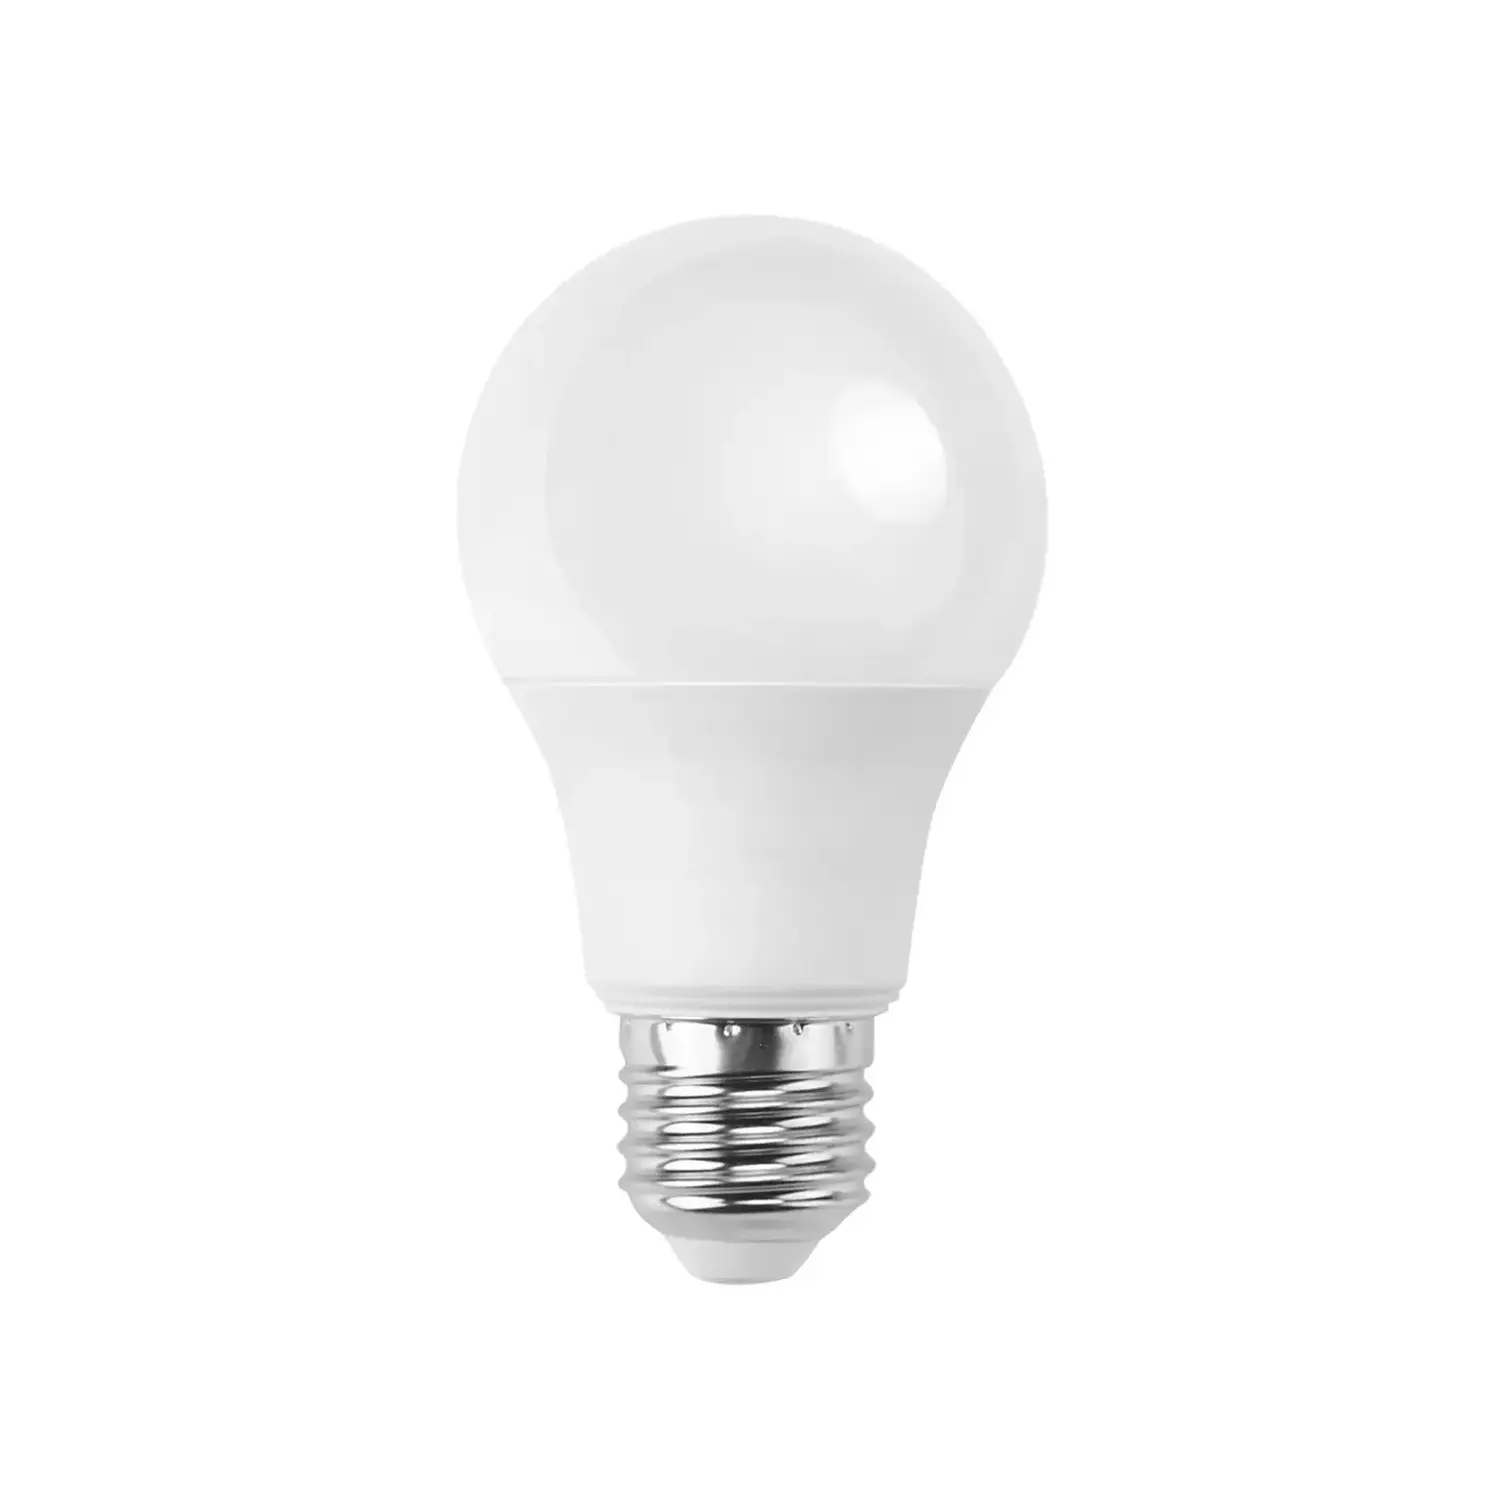 immagine del prodotto lampadina led A60 bulbo classico e27 9 watt bianco caldo